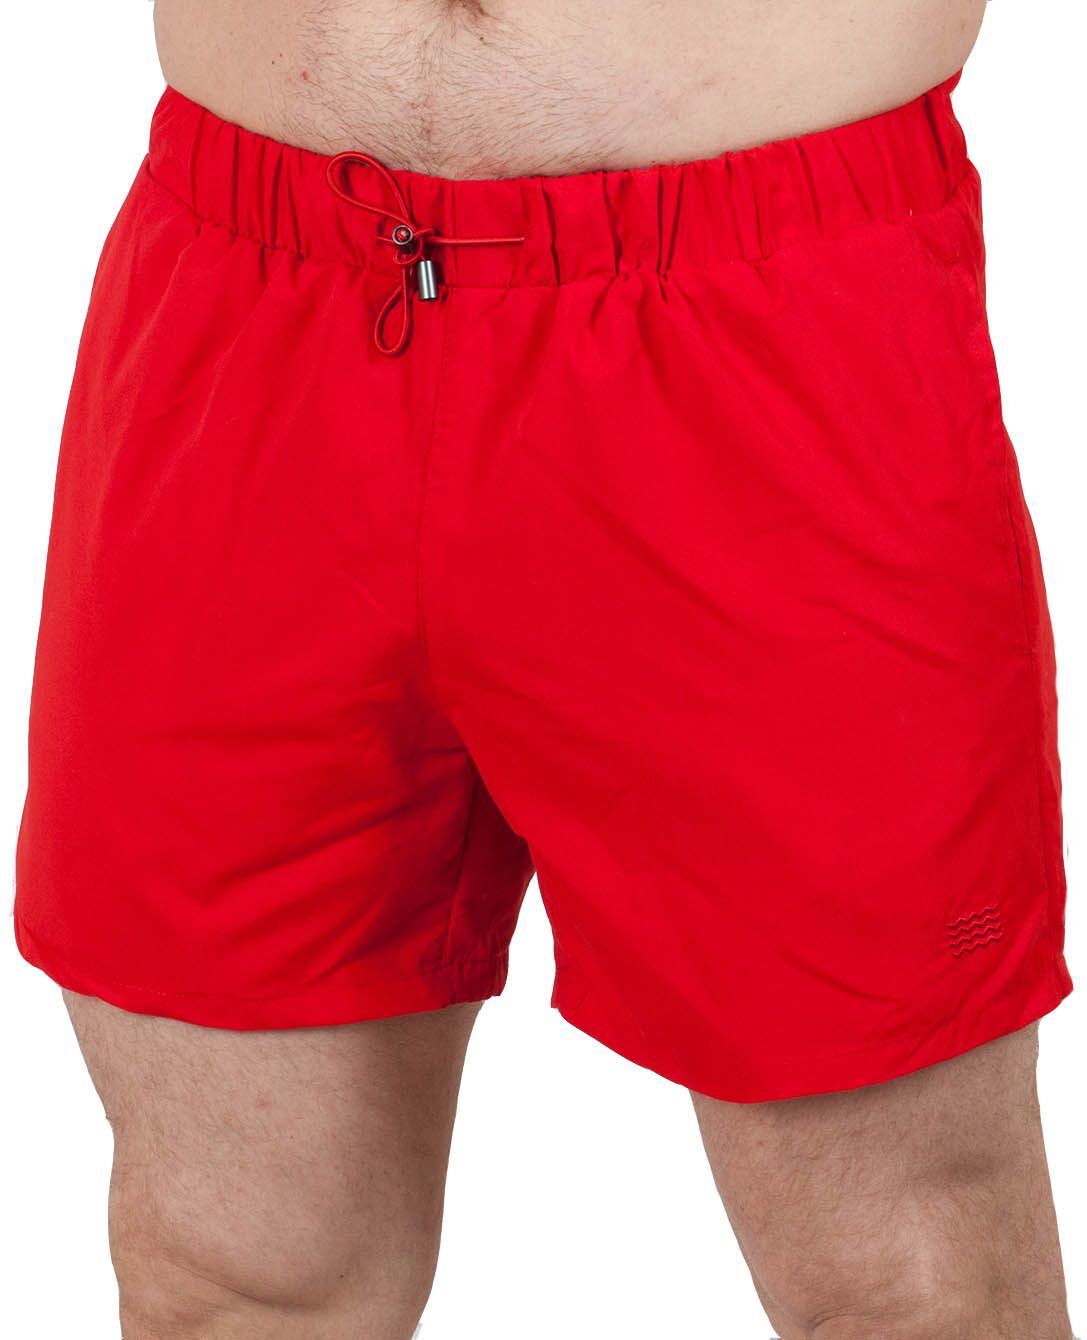 Купить магазине мужские шорты. Яркие мужские шорты Topman для плавания №ш305. Шорты Топмэн мужские. Красные шорты мужские. Пляжные шорты мужские.